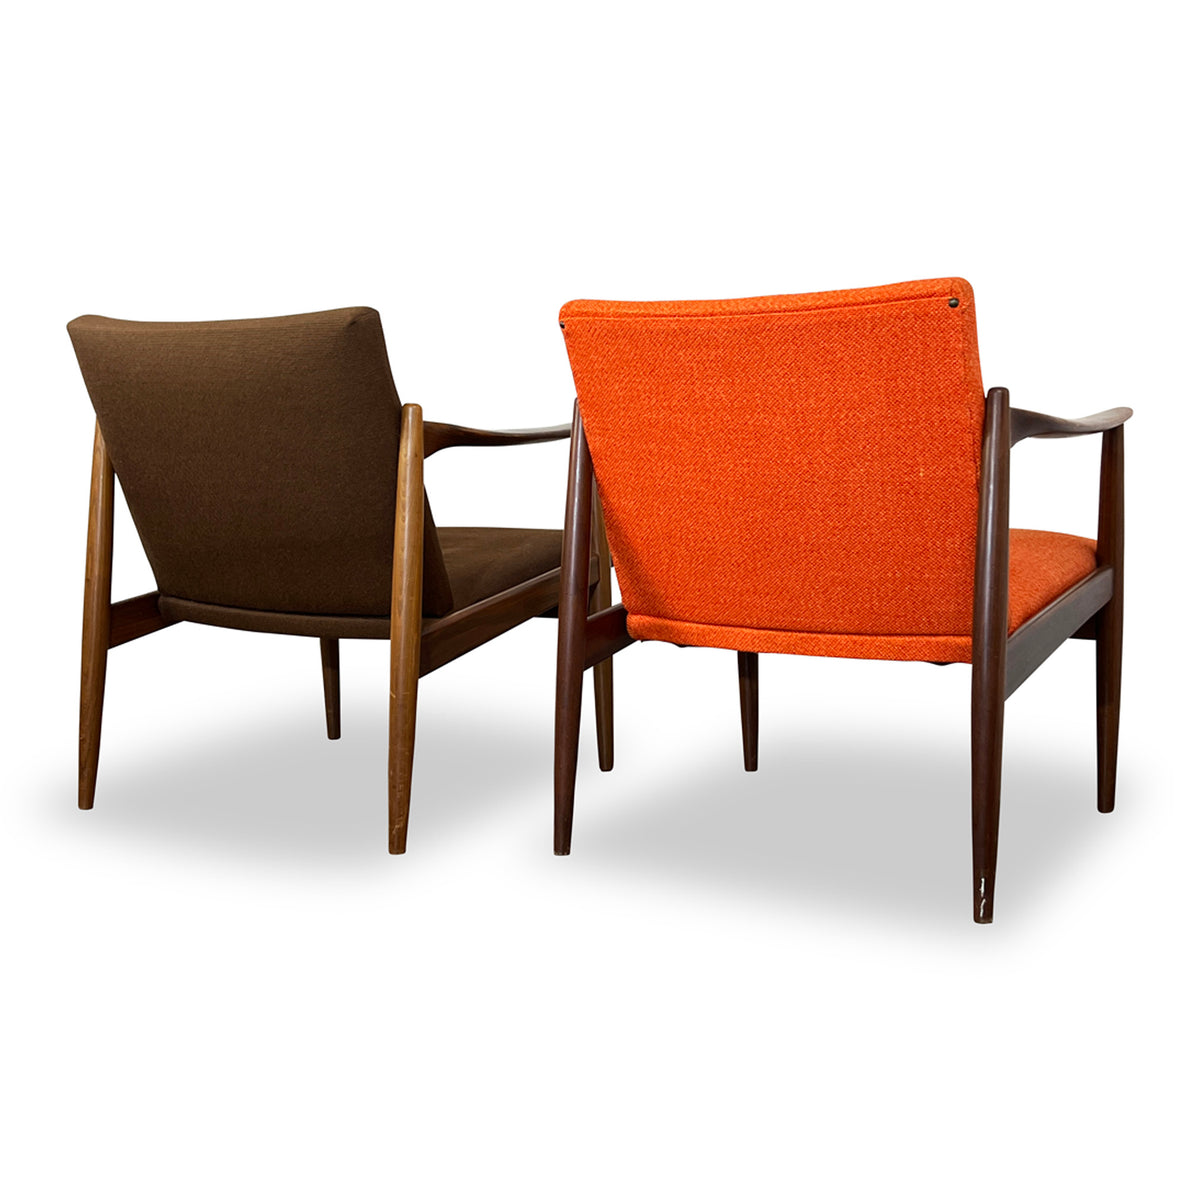 Pair of Norwegian Lounge Chairs by Sandvik Mobelfabrik